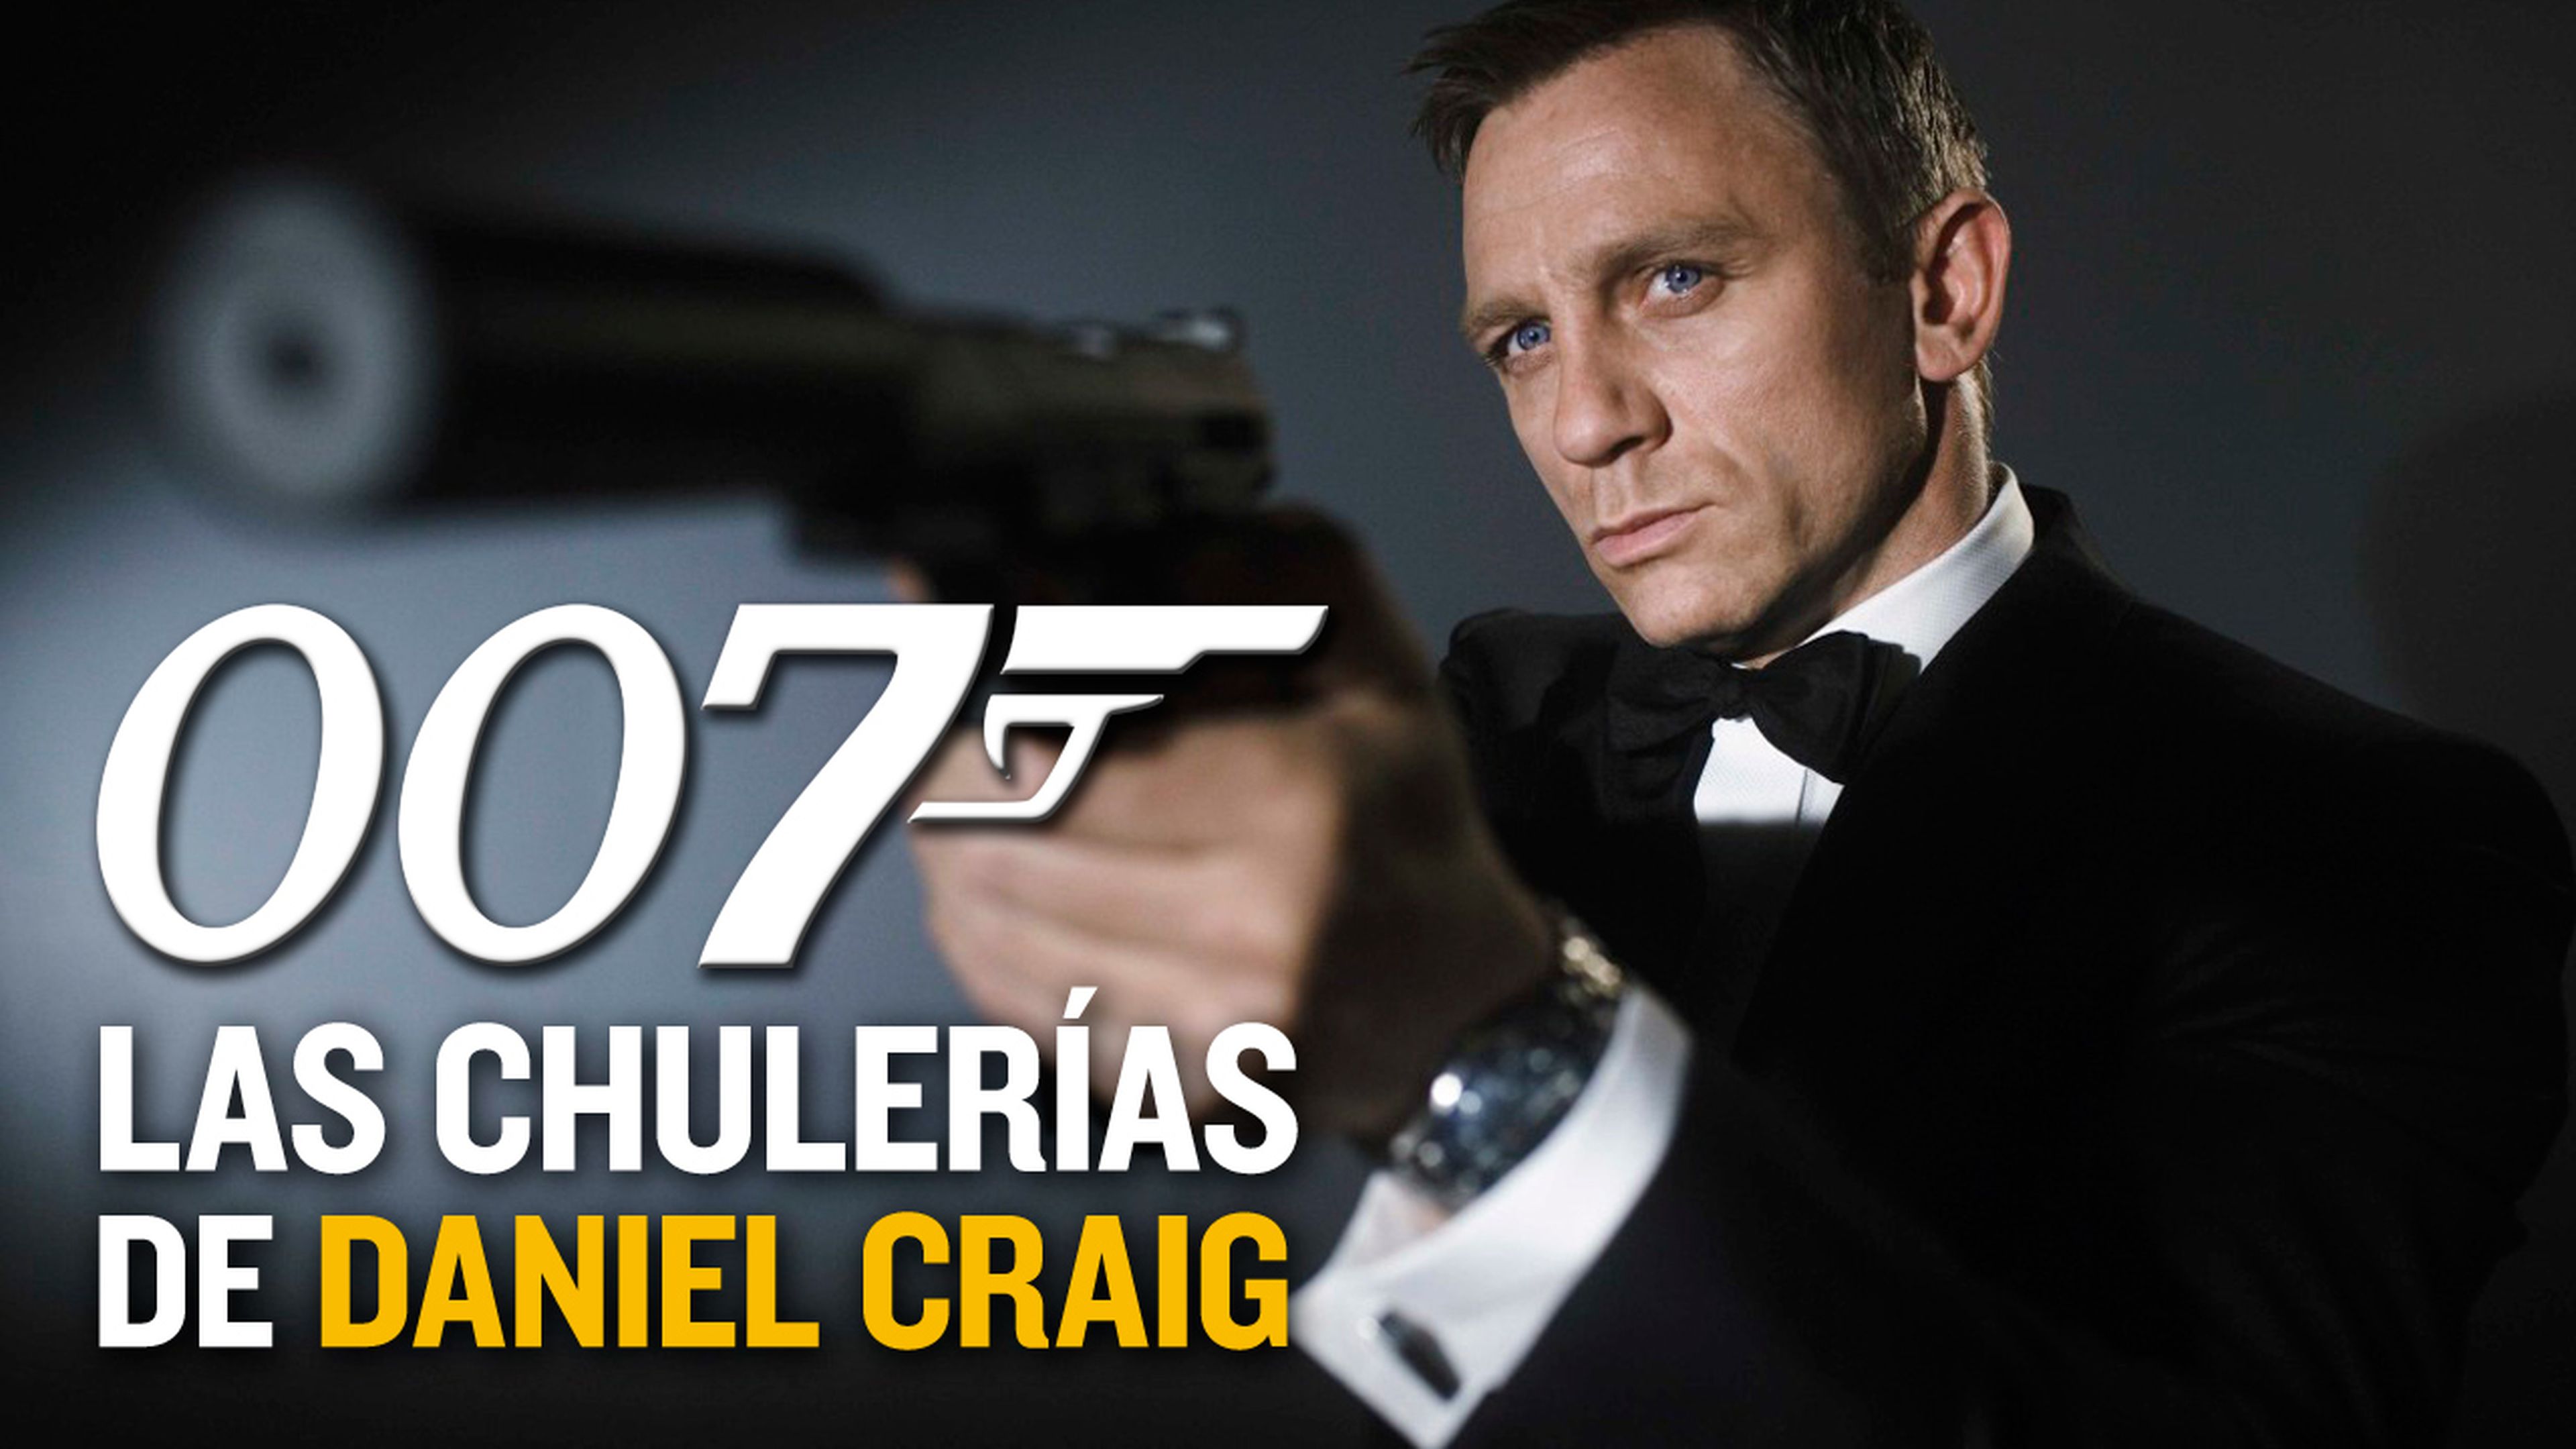 Las chulerias de Daniel Craig 007